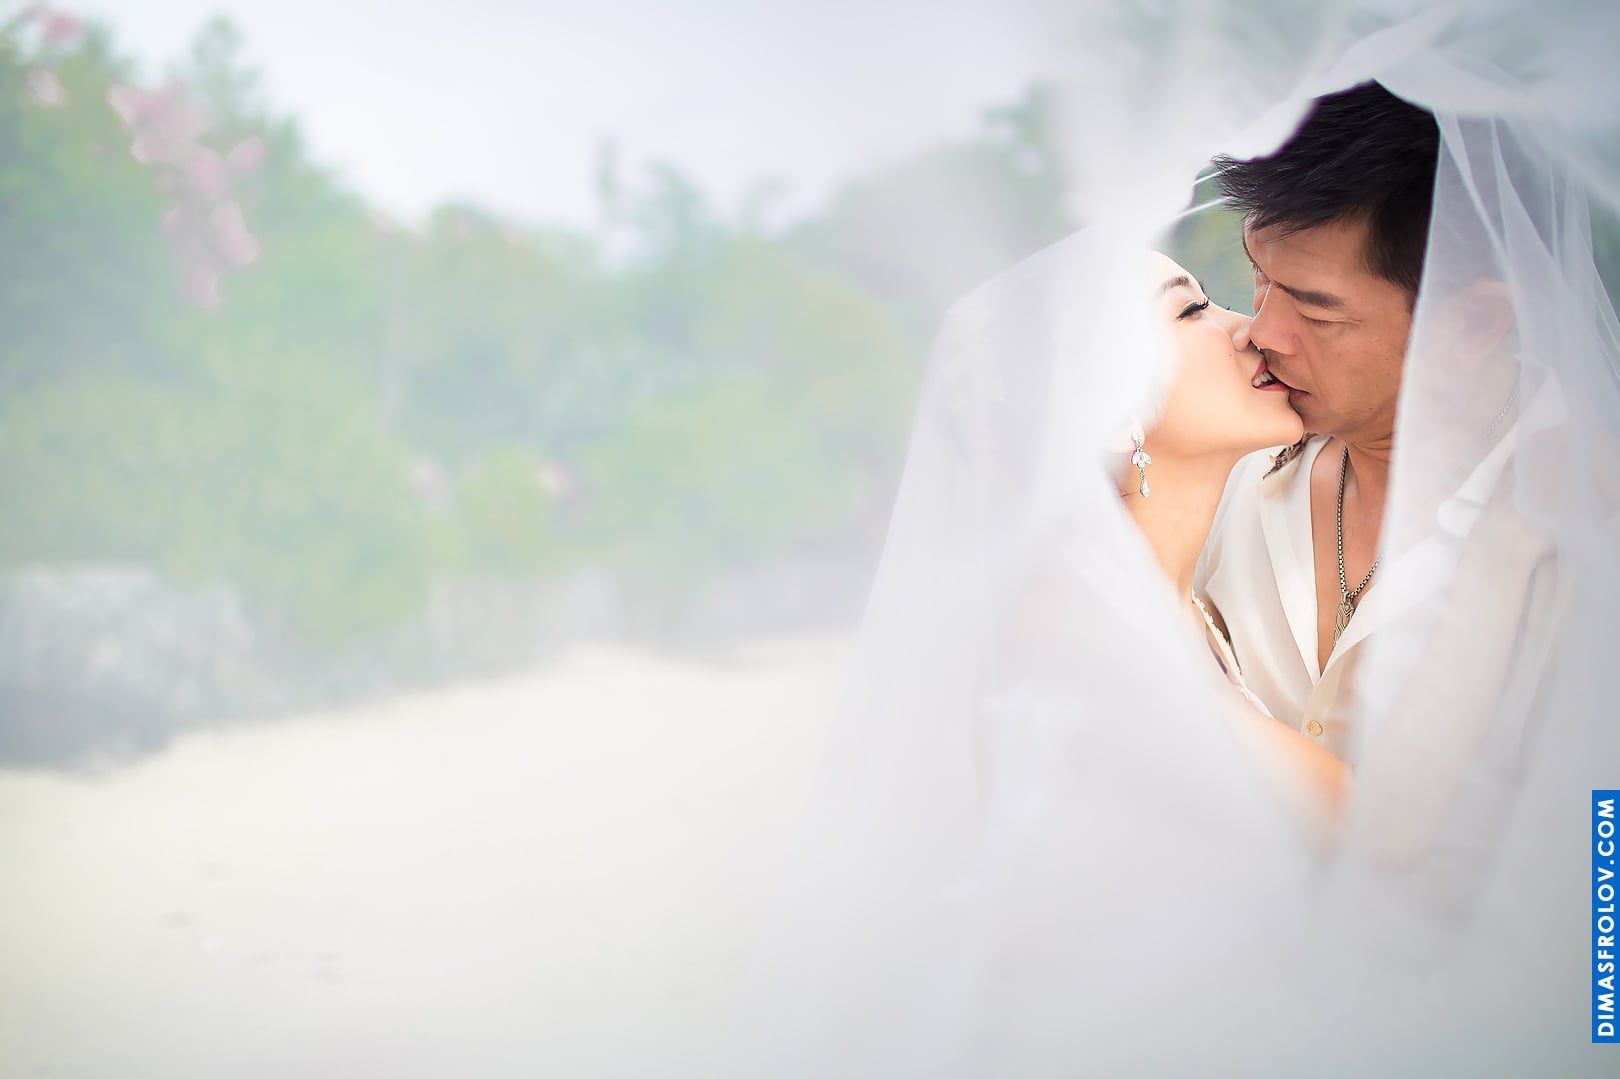 Koh Samui Wedding Photographer. Kissing under veil on Koh Samui wedding Dimas Frolov. Koh Samui Photographer. DimasFrolov.com